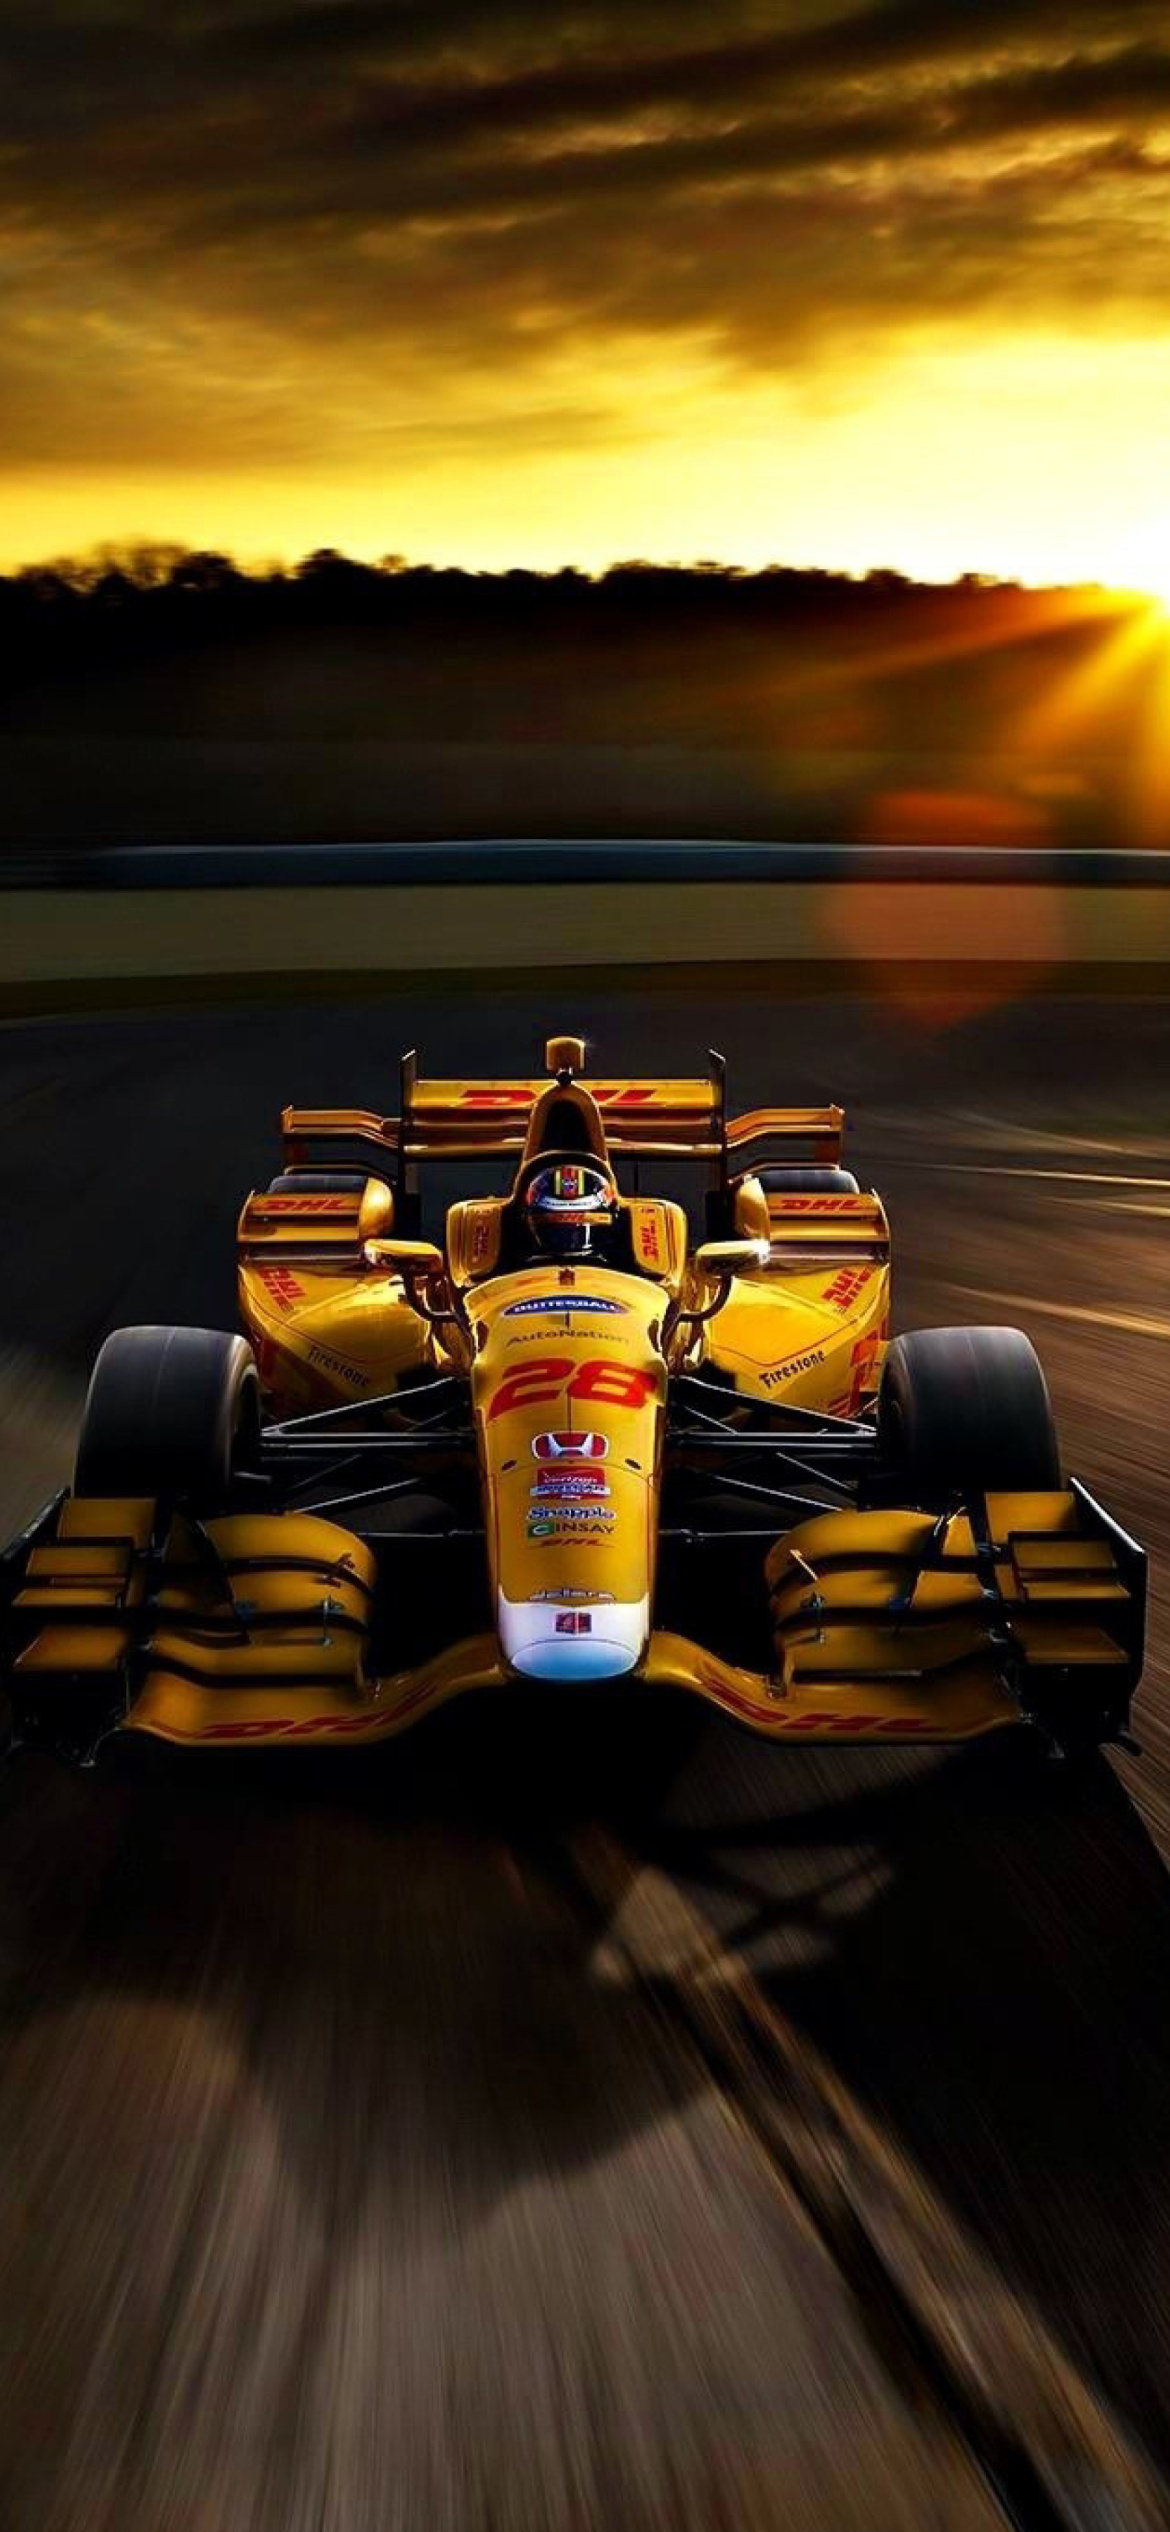 Honda Formula 1 Race Car wallpaper 1170x2532